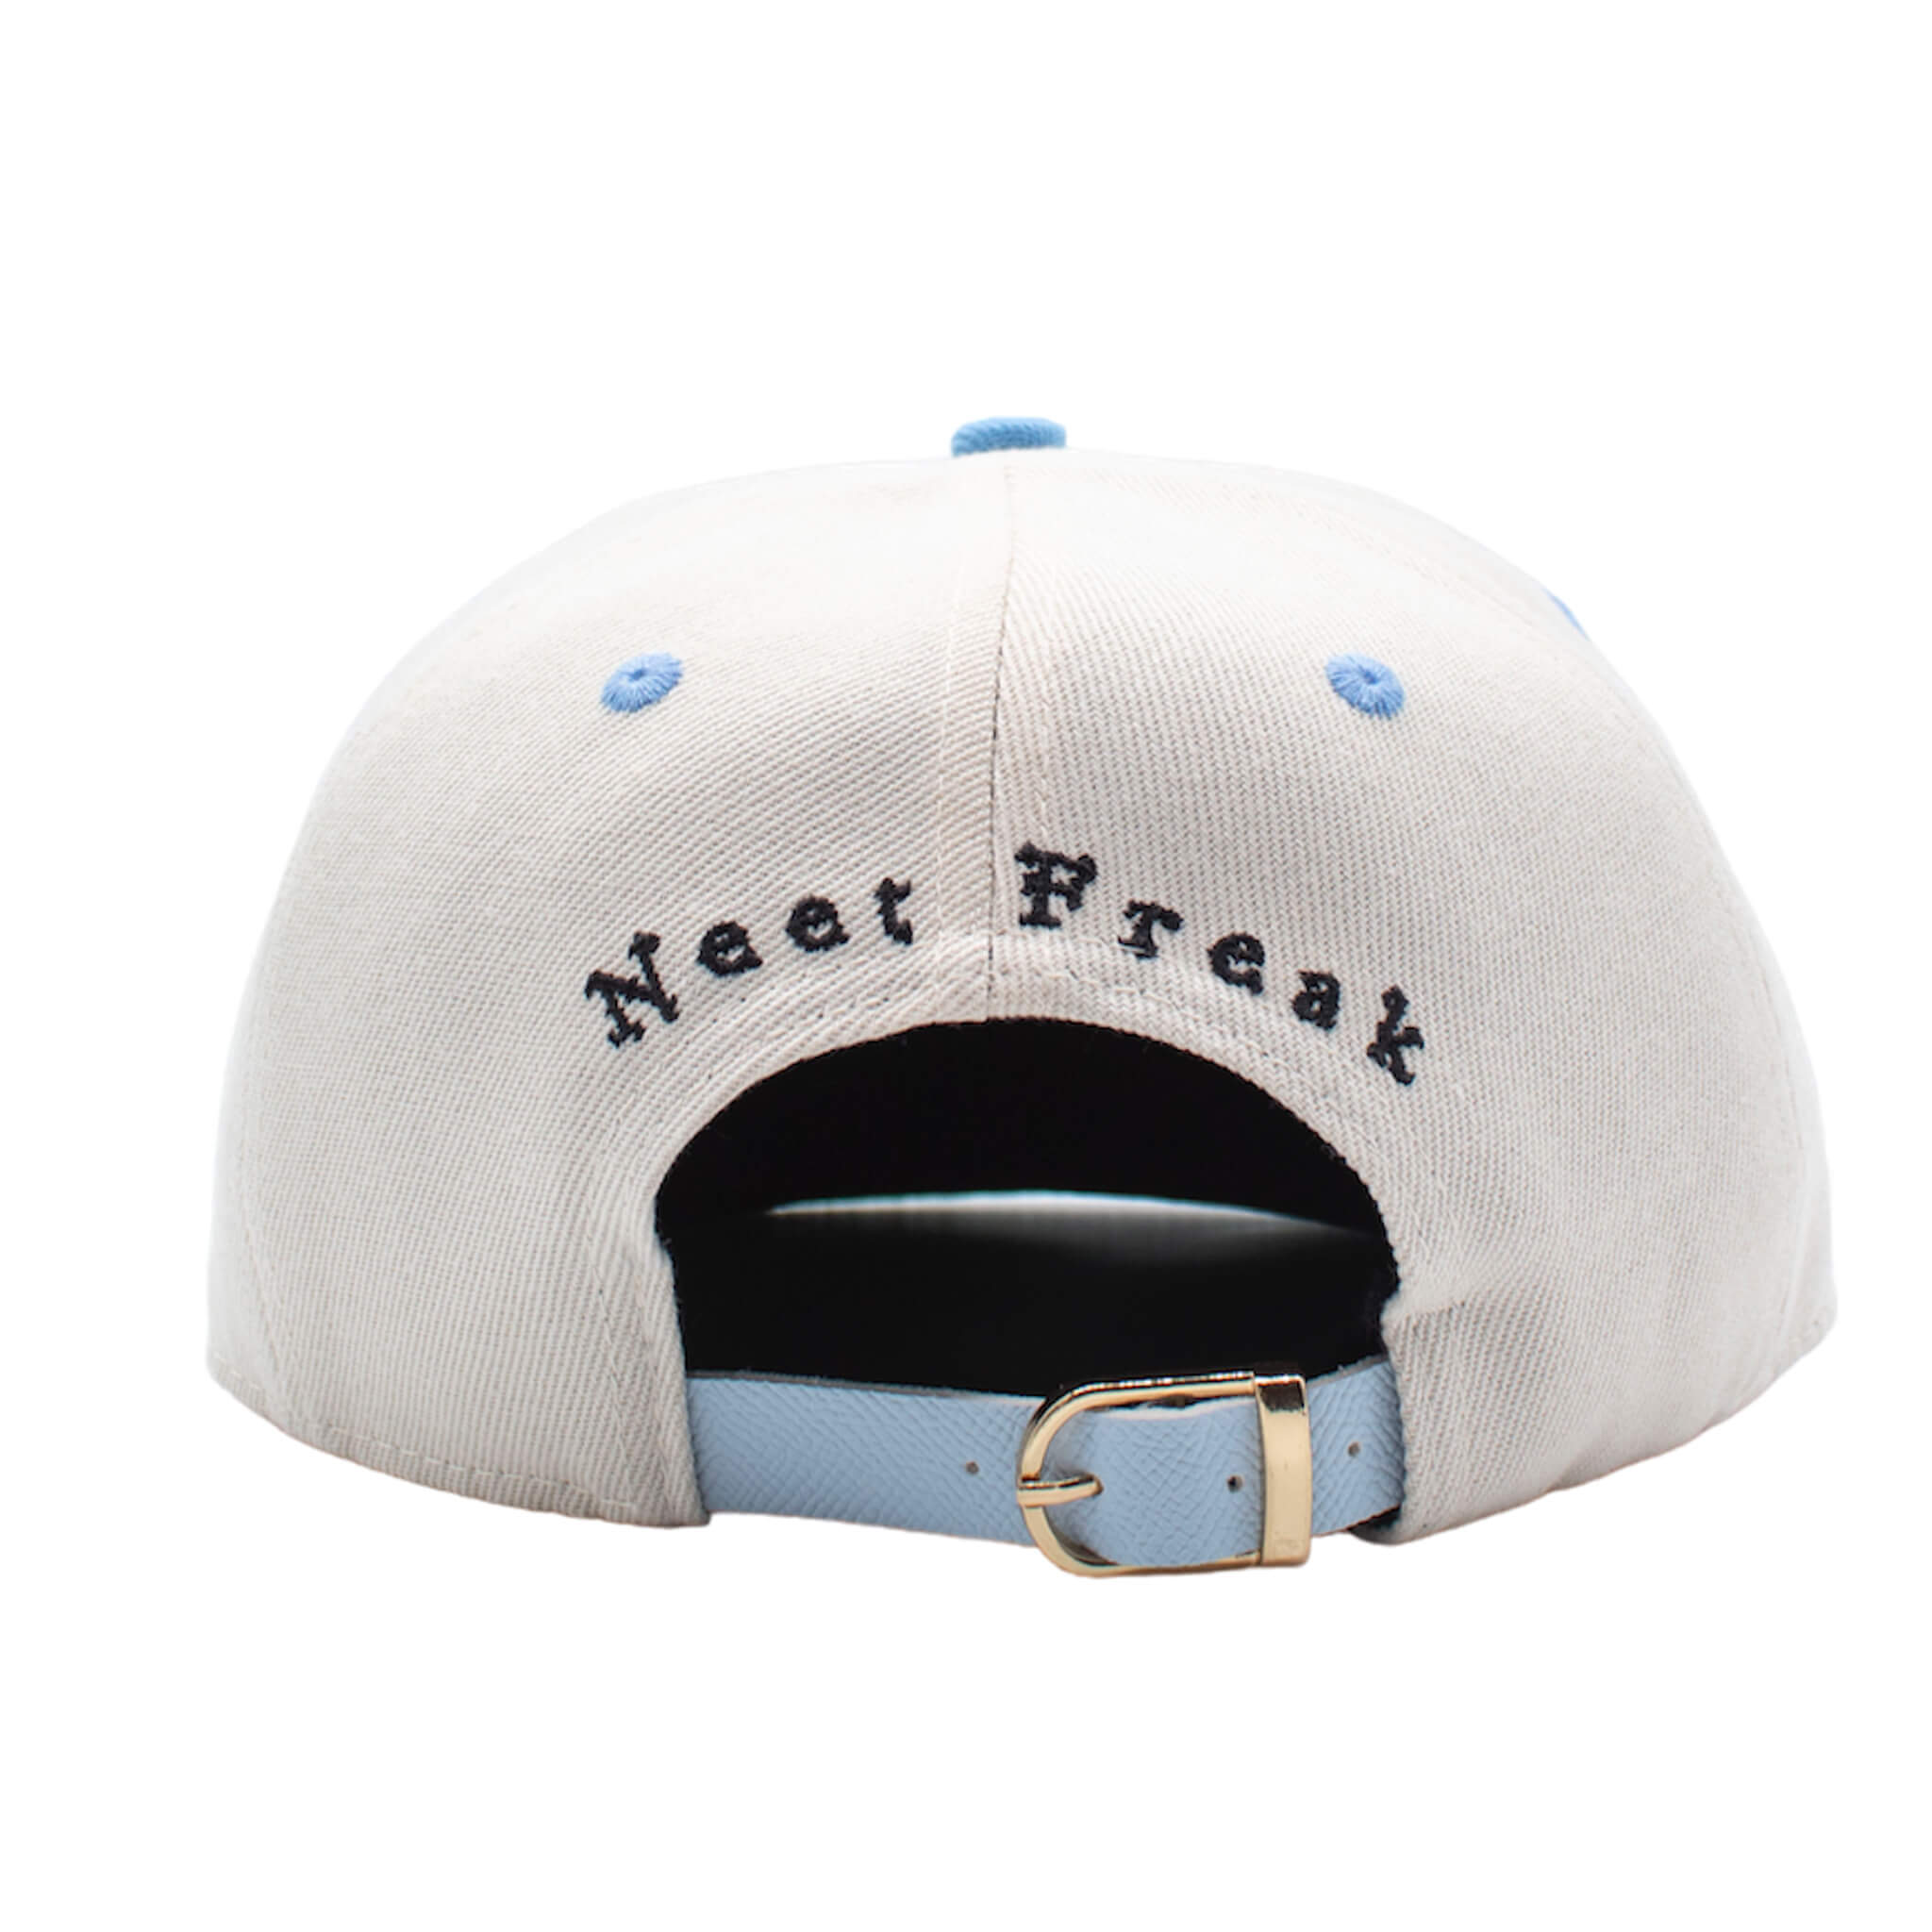 Satin lined Neet Freak Hat Blue